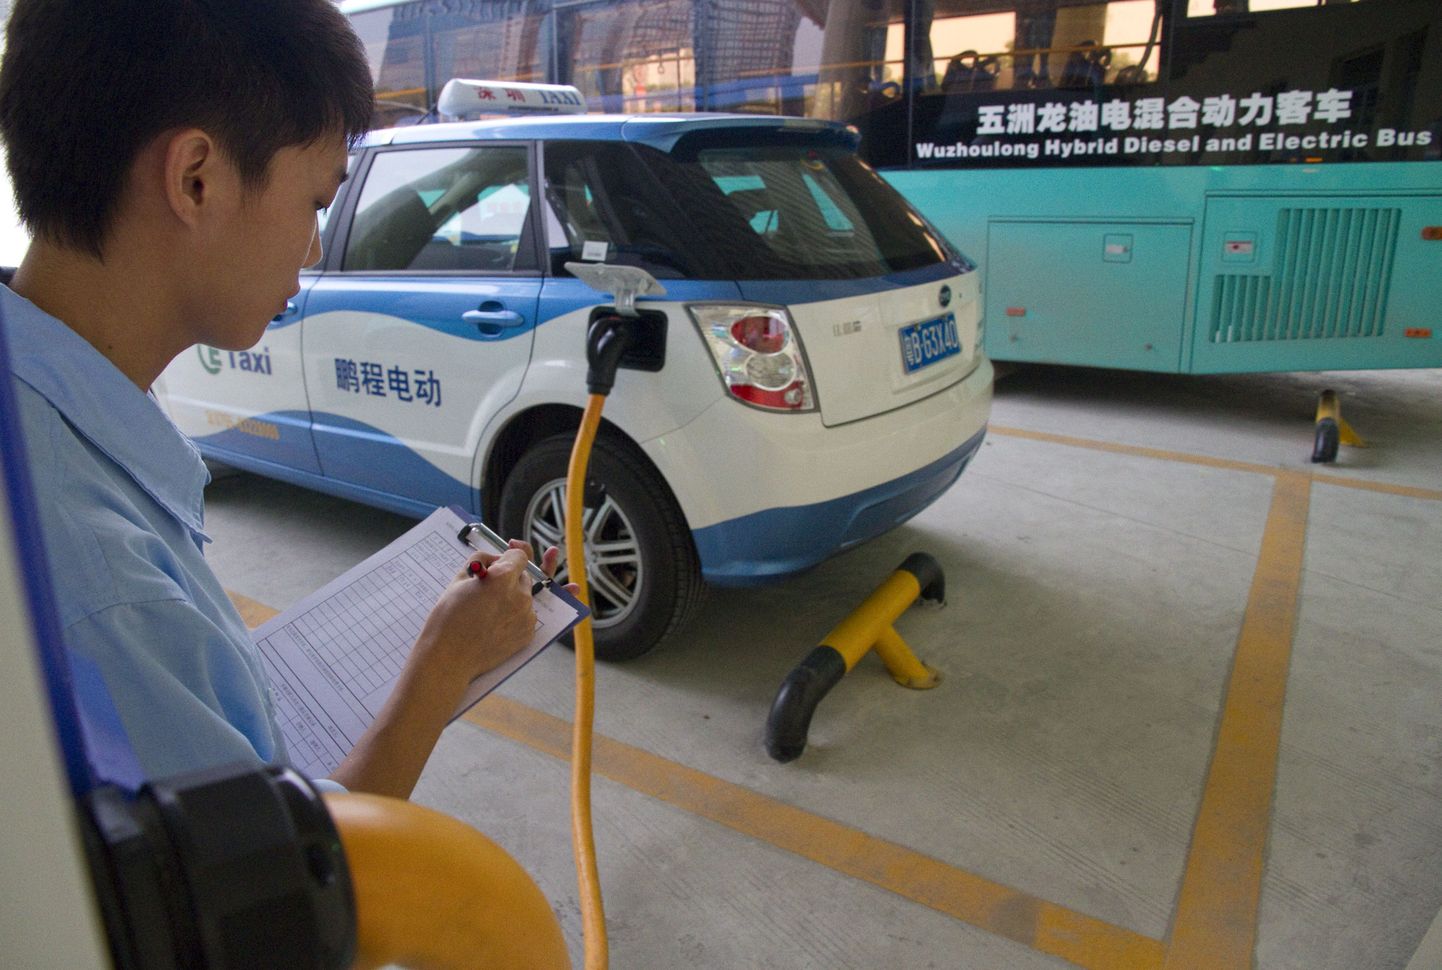 Hiina plaanib hakata kõigi eraautode liikumist kiibistamise abil jälgima. Pilt on illustratiivne.